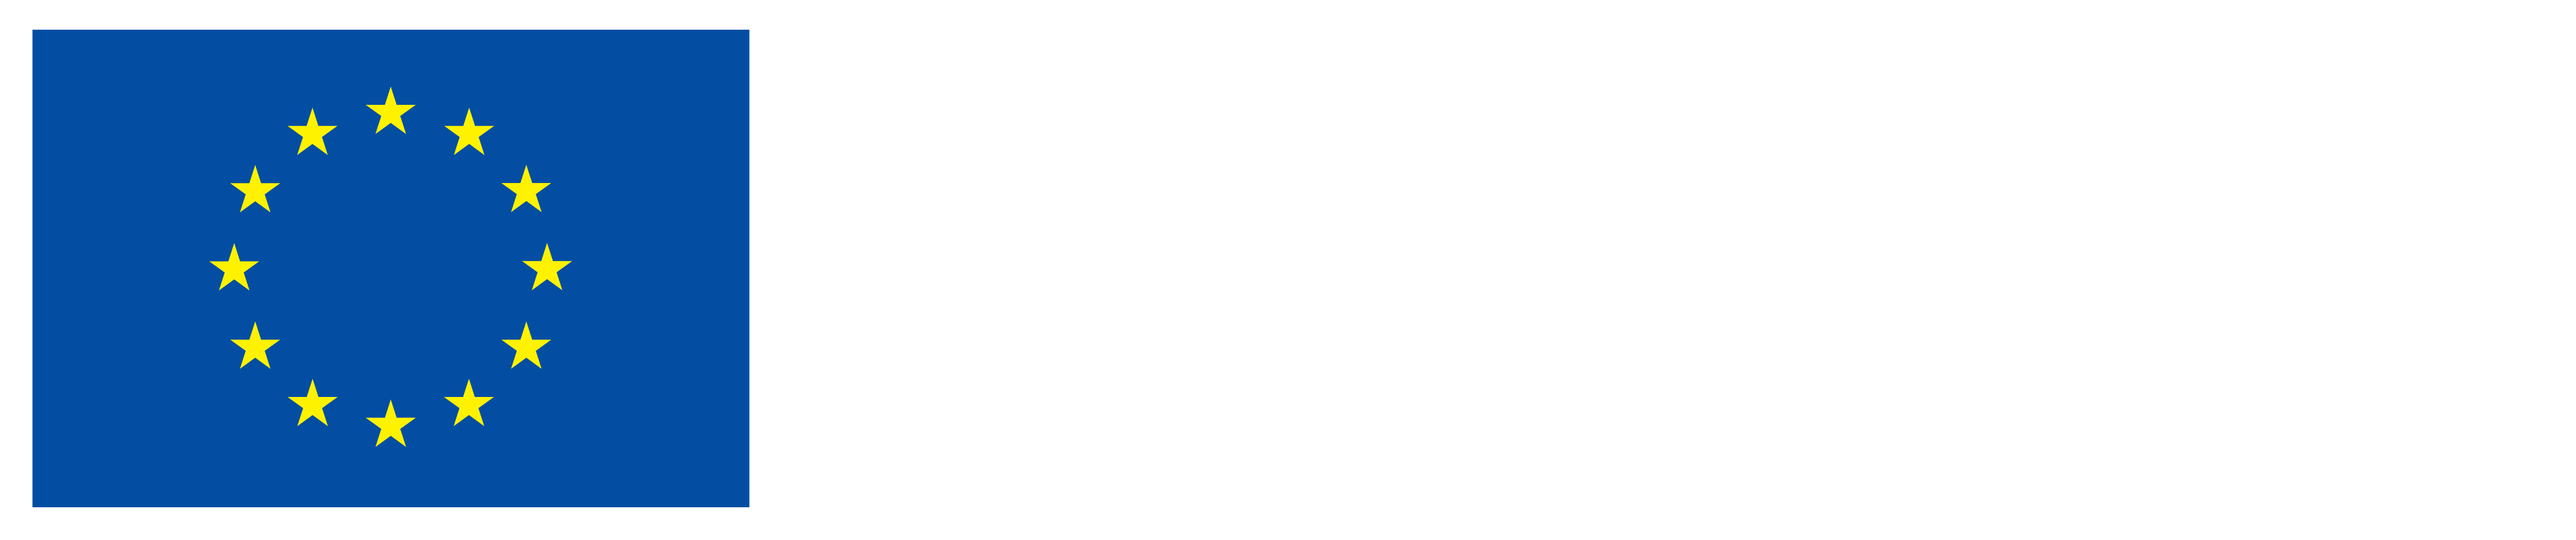 ממומן על ידי האיחוד האירופי